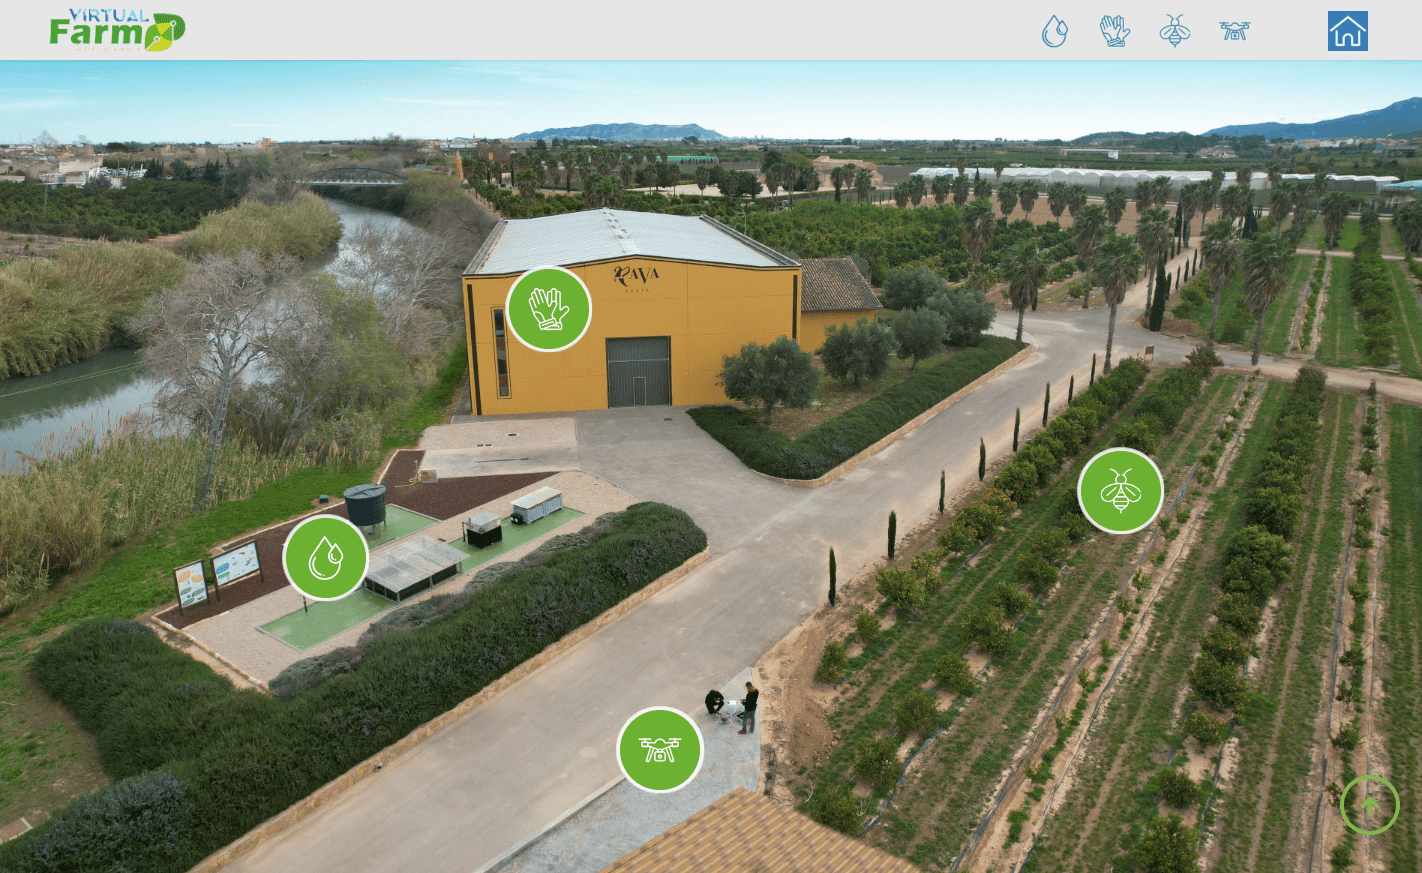 Visita Virtual Farm y descubre qué buenas prácticas agrícolas puedes incorporar en tu trabajo diario